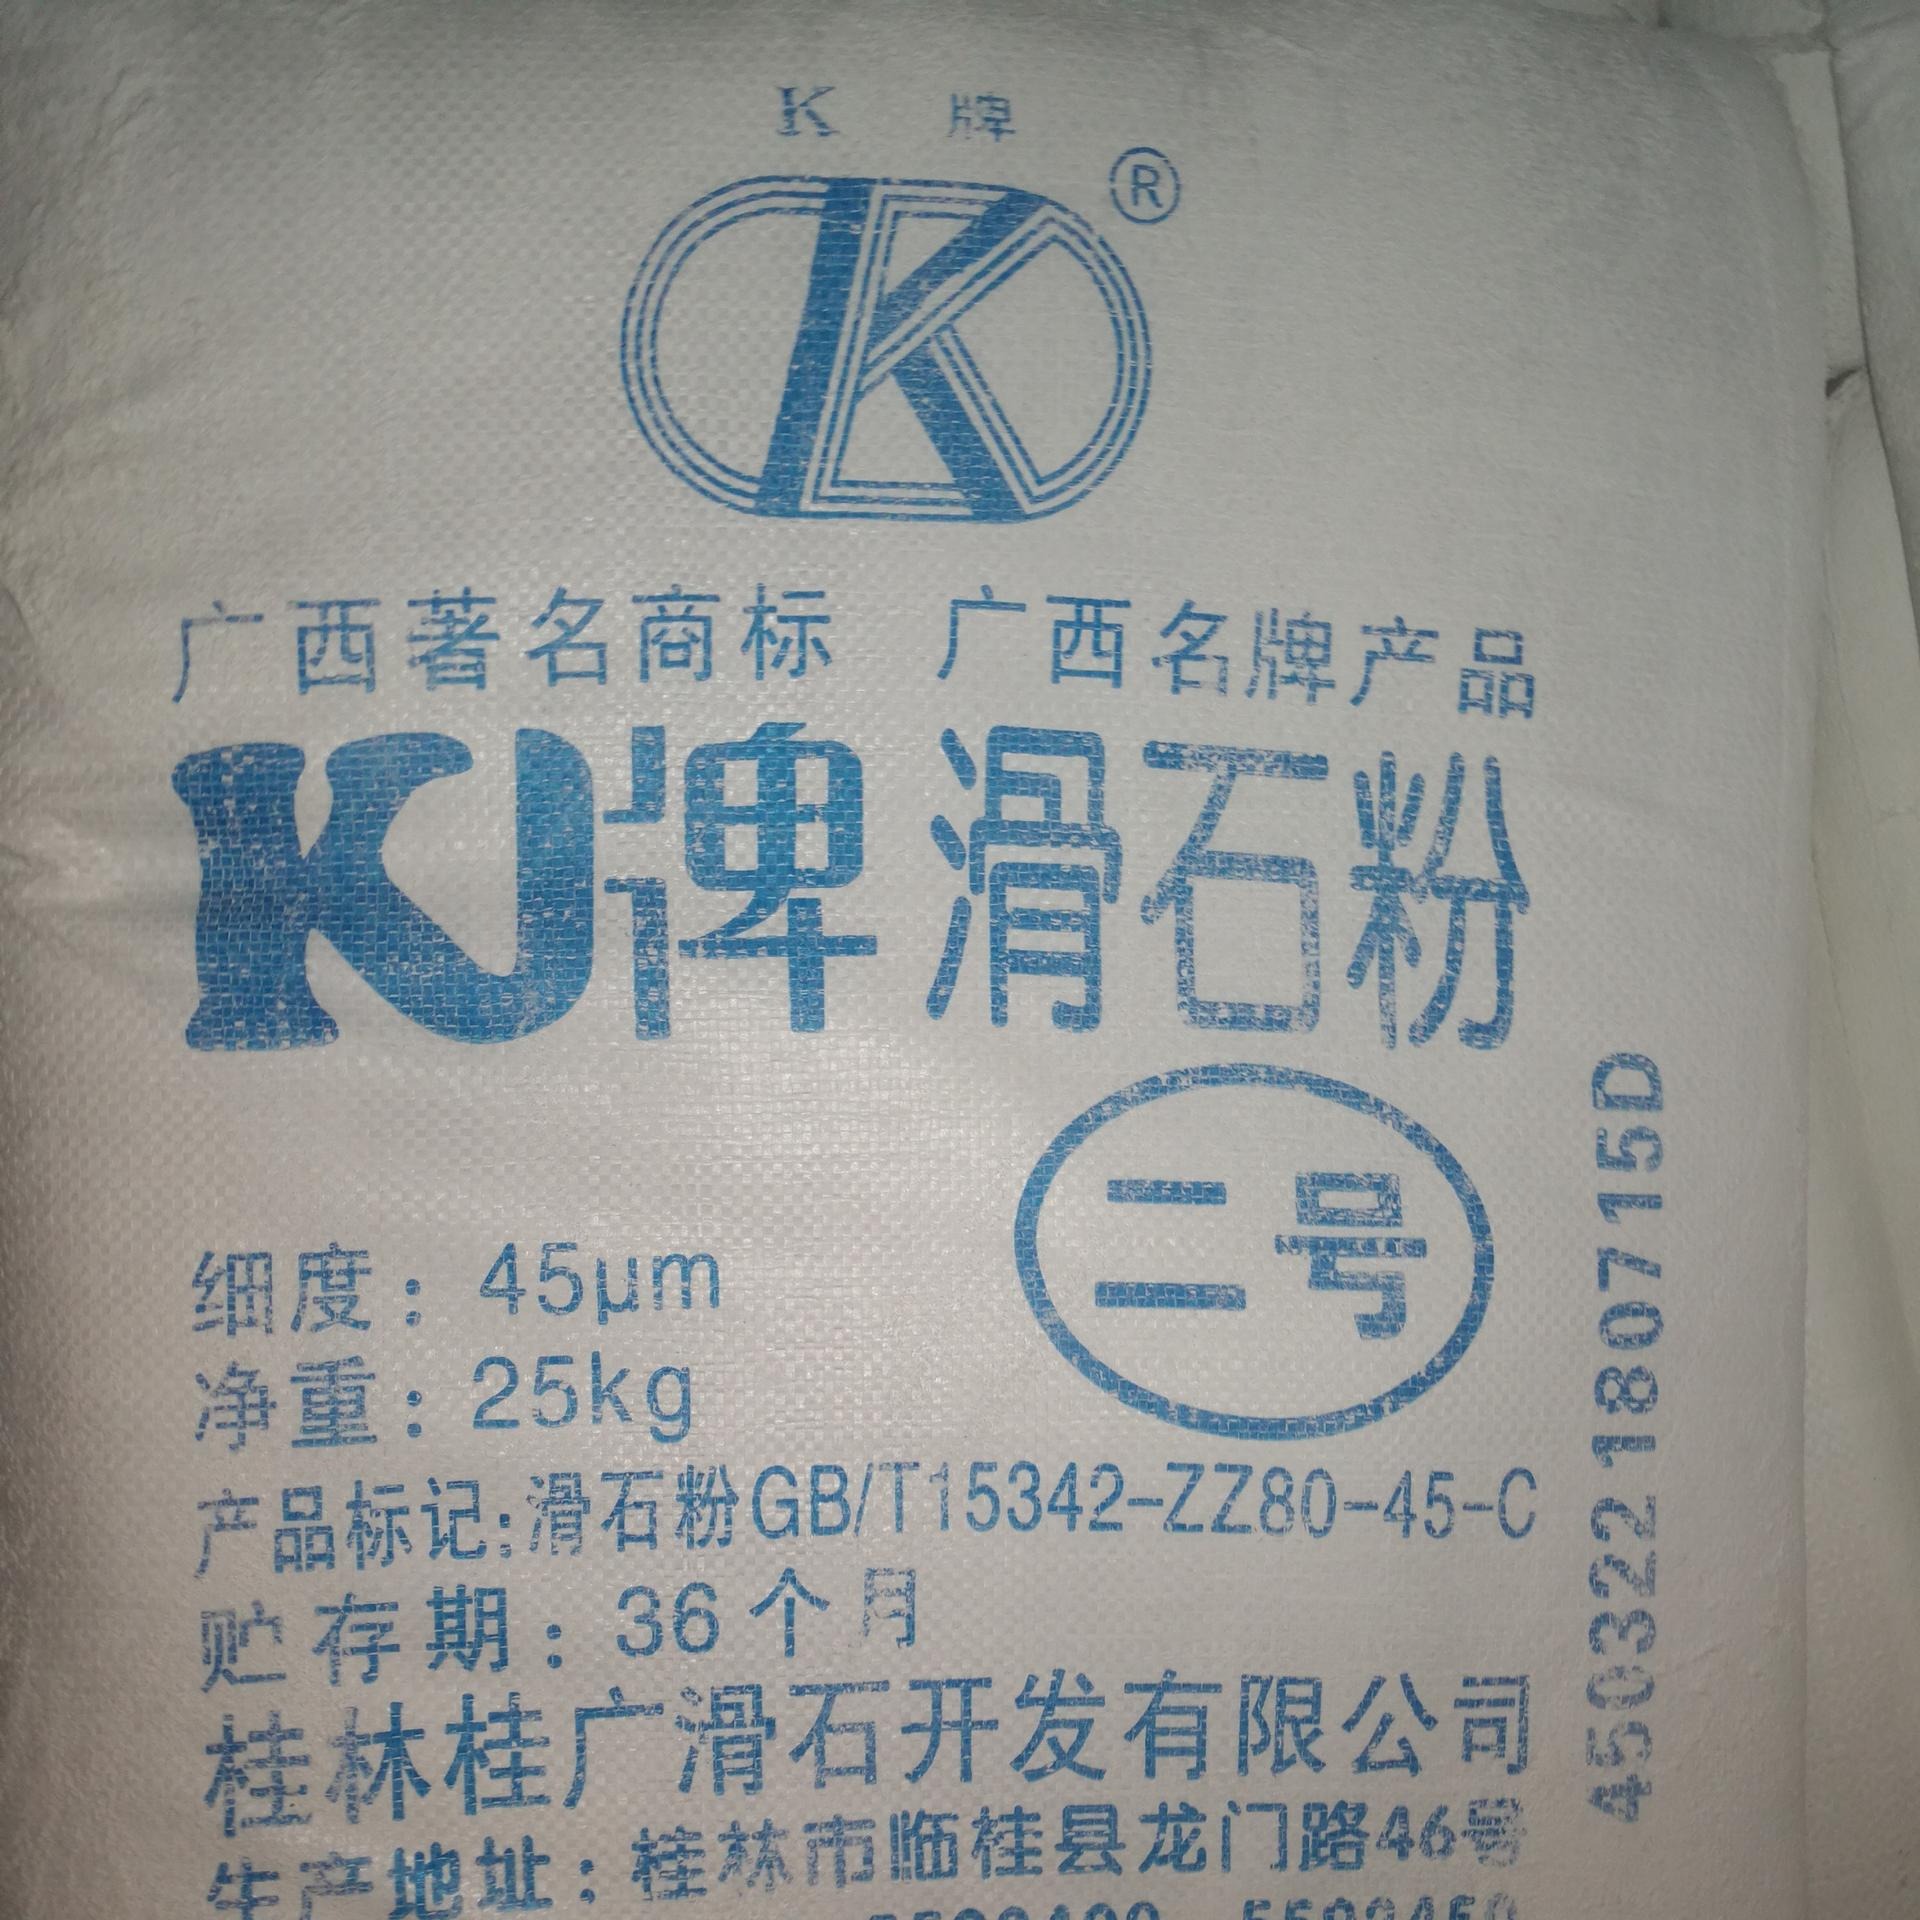 惠州供应涂料橡胶塑胶用K牌滑石粉325目、1250目价格优惠惠州滑石粉